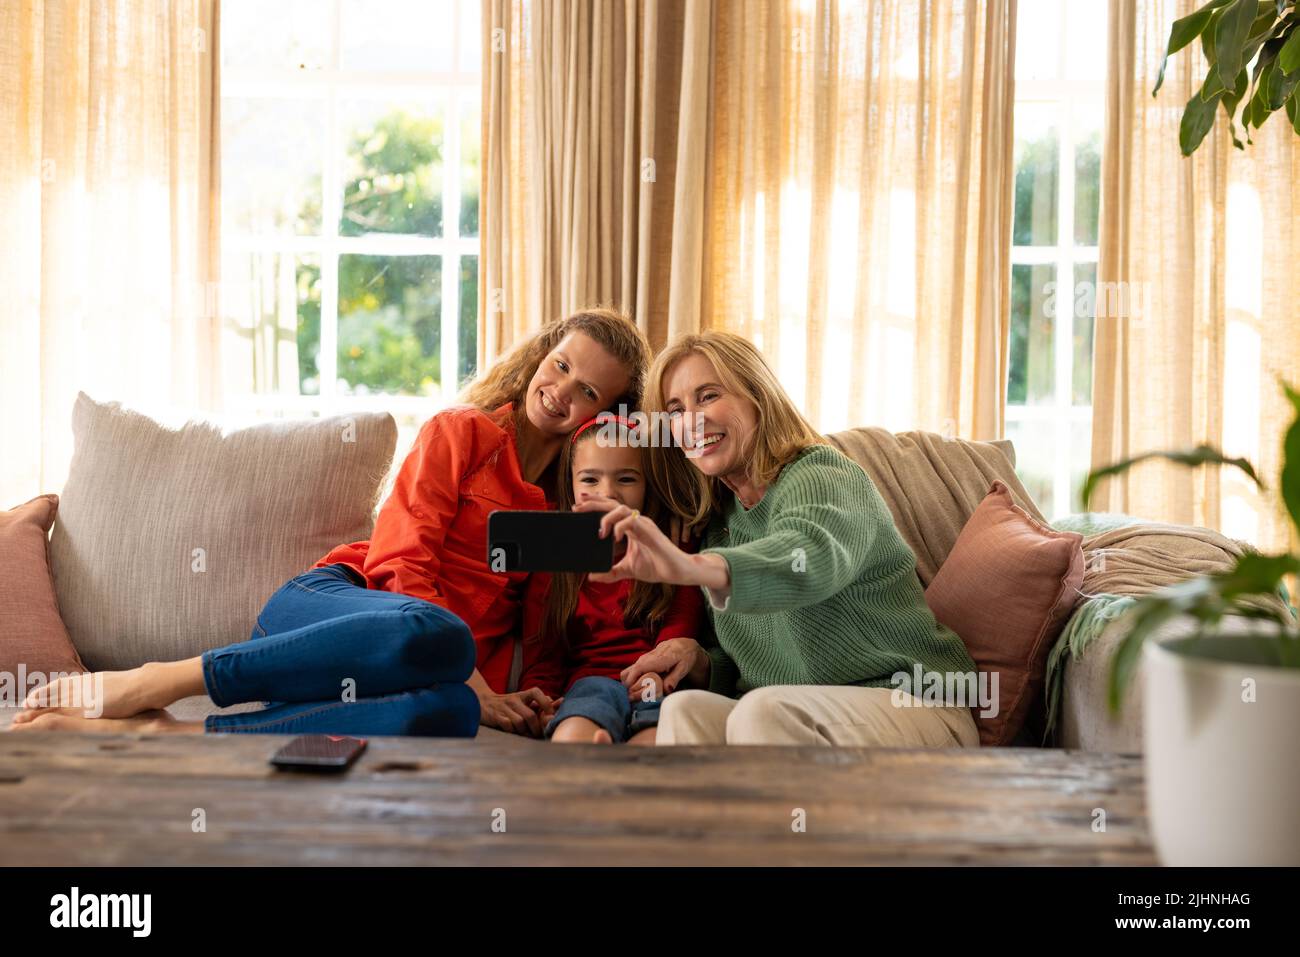 Image de femmes caucasiennes de trois générations heureuses assises sur un canapé et prenant le selfie Banque D'Images